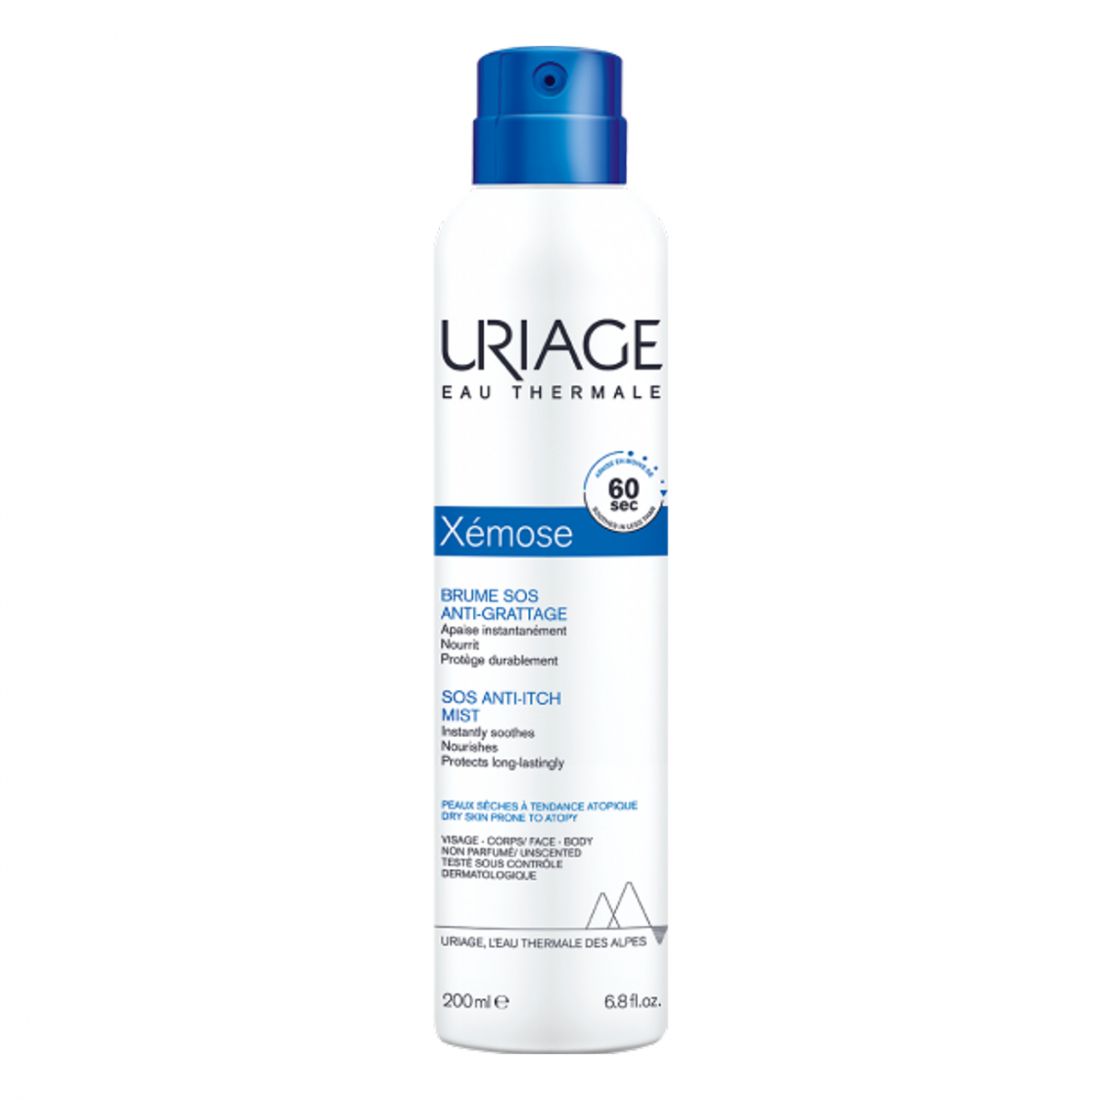 Uriage - 'Xémose' Brume Sos AntiGrattage - 200 ml